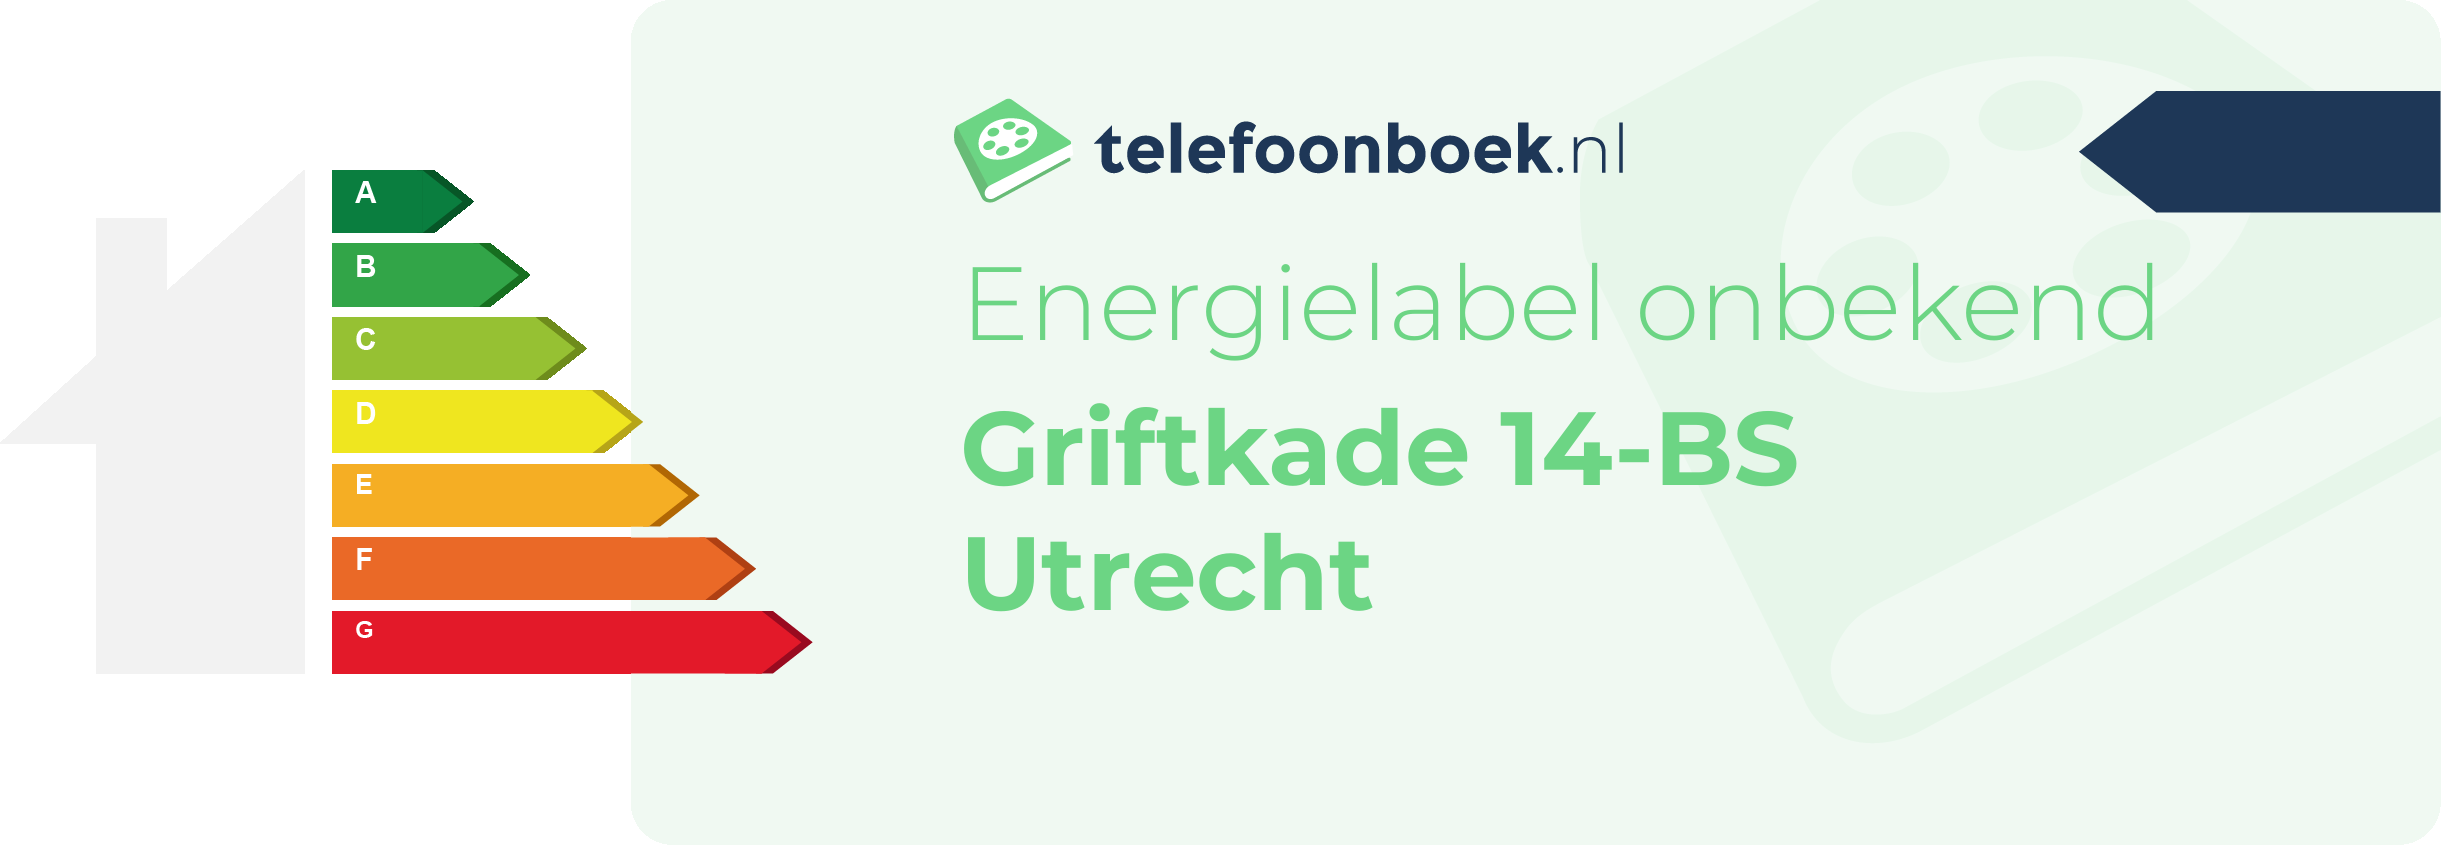 Energielabel Griftkade 14-BS Utrecht